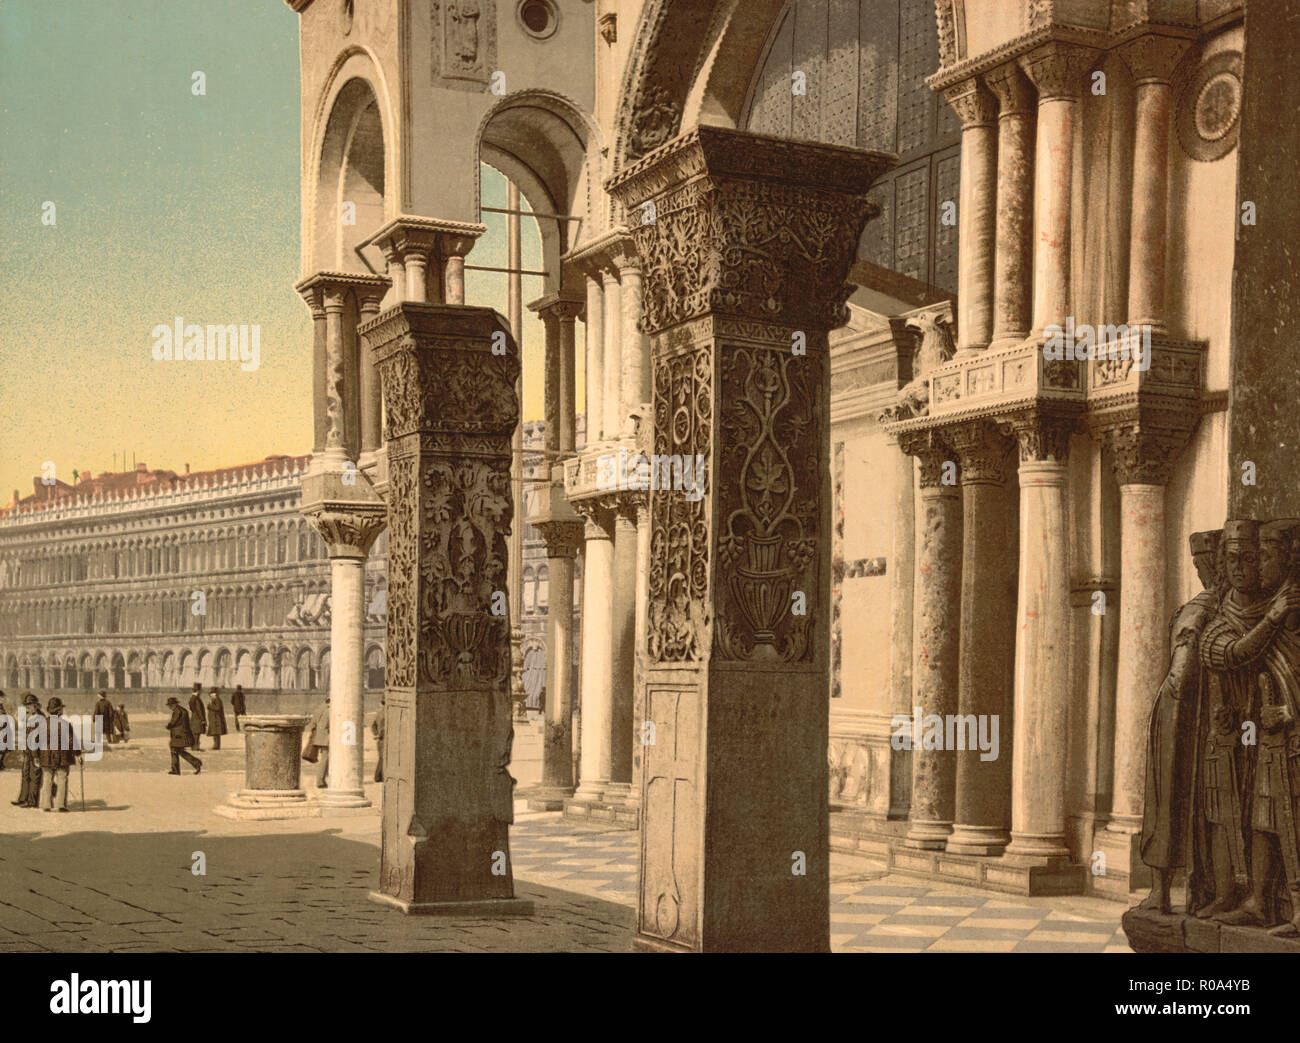 Les colonnes de l'église de Saint Marc, Venise, Italie, impression Photochrome, Detroit Publishing Company, 1900 Banque D'Images